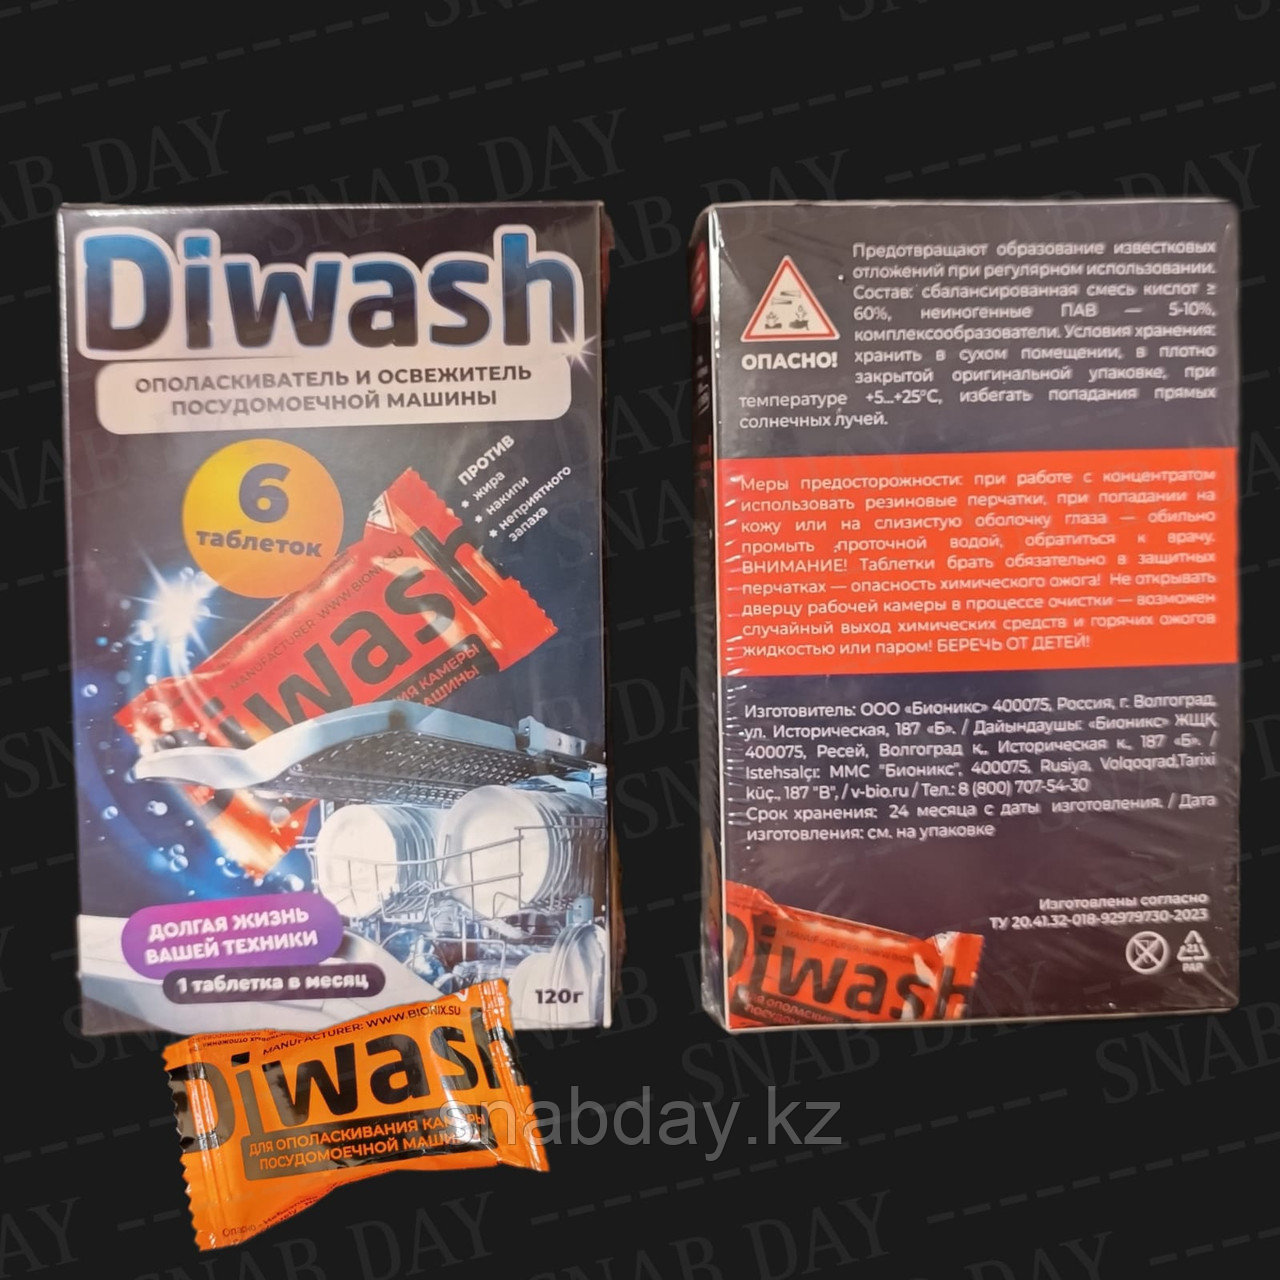 Кислотные таблетки ополаскиватель и освежитель посудомоечной машины DIWASH 6шт